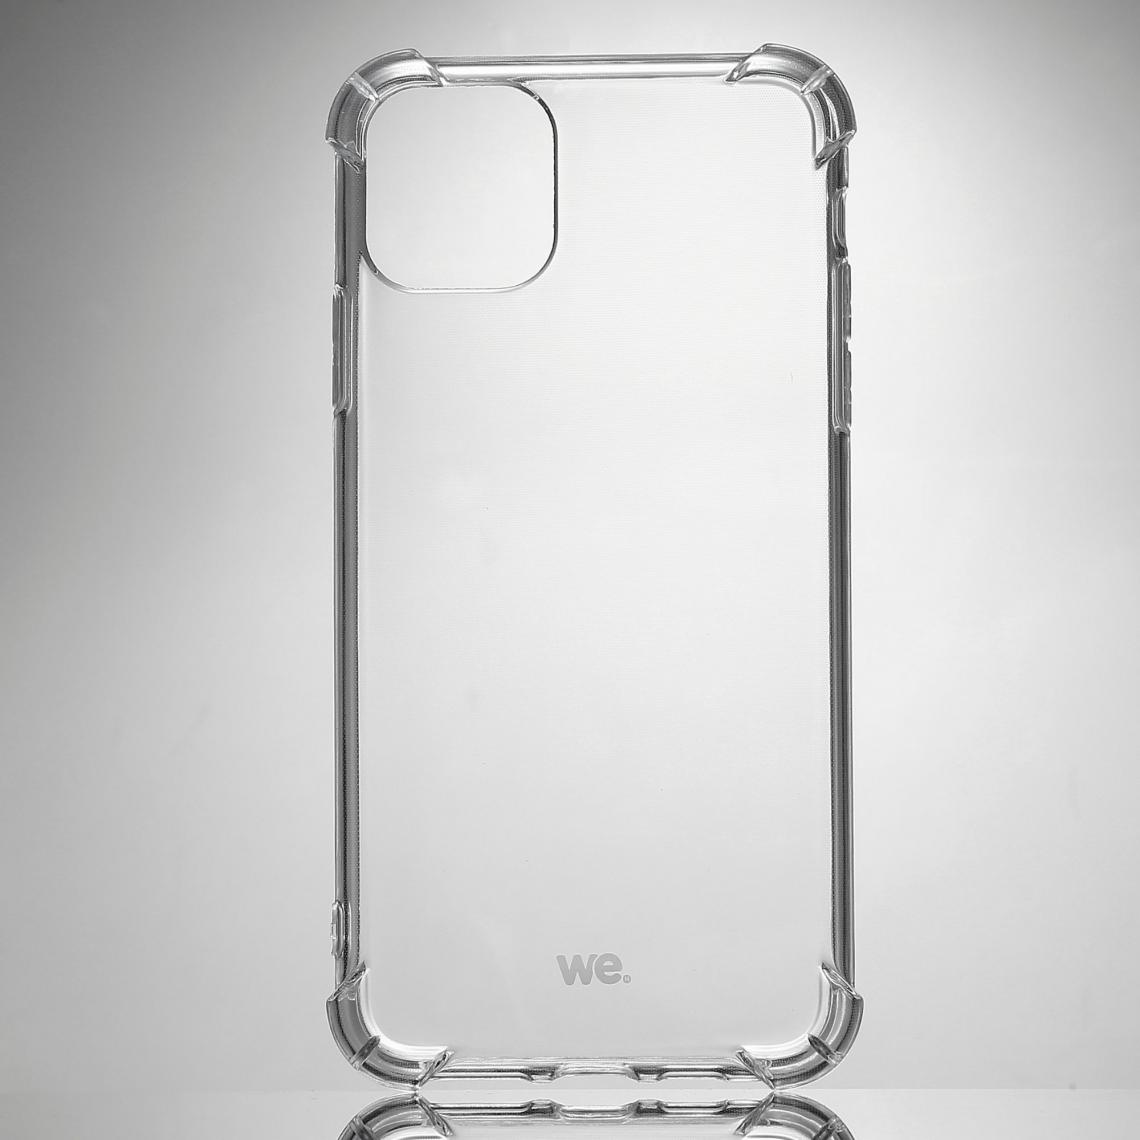 We - WE Coque de protection transparente pour smartphone iPhone 12 PRO MAX Fabriqué en TPU. Ultra résistant Apparence du téléphone conservée. - Coque, étui smartphone